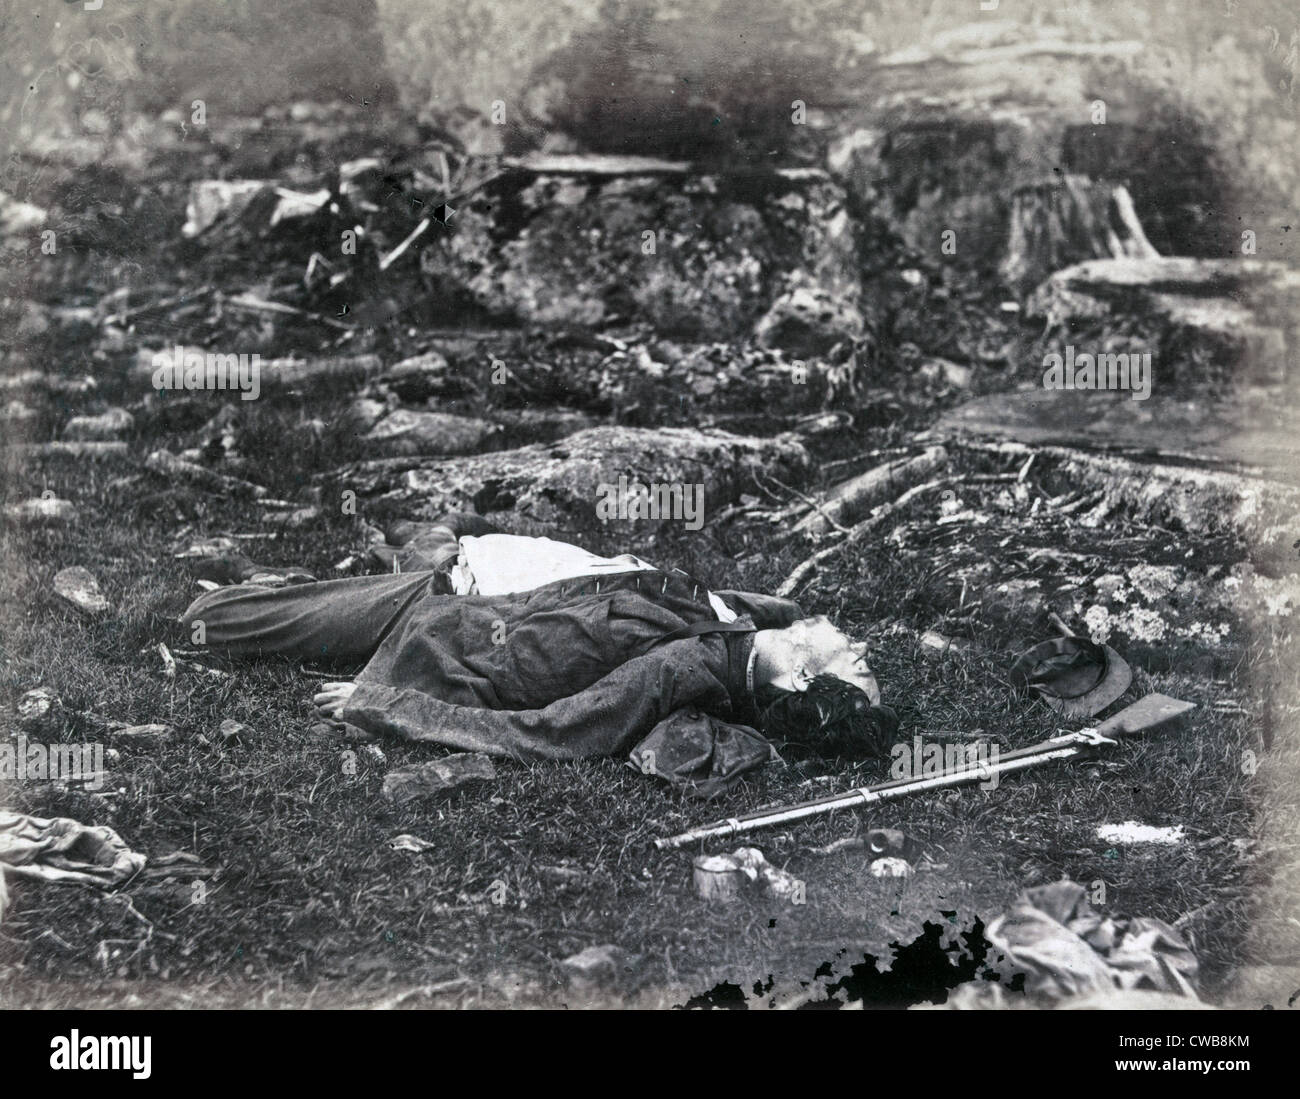 La guerre civile. La bataille de Gettysburg. Un tireur's dernier sommeil, Gettysburg, Pennsylvanie. Alex Gardner, photographe. Banque D'Images